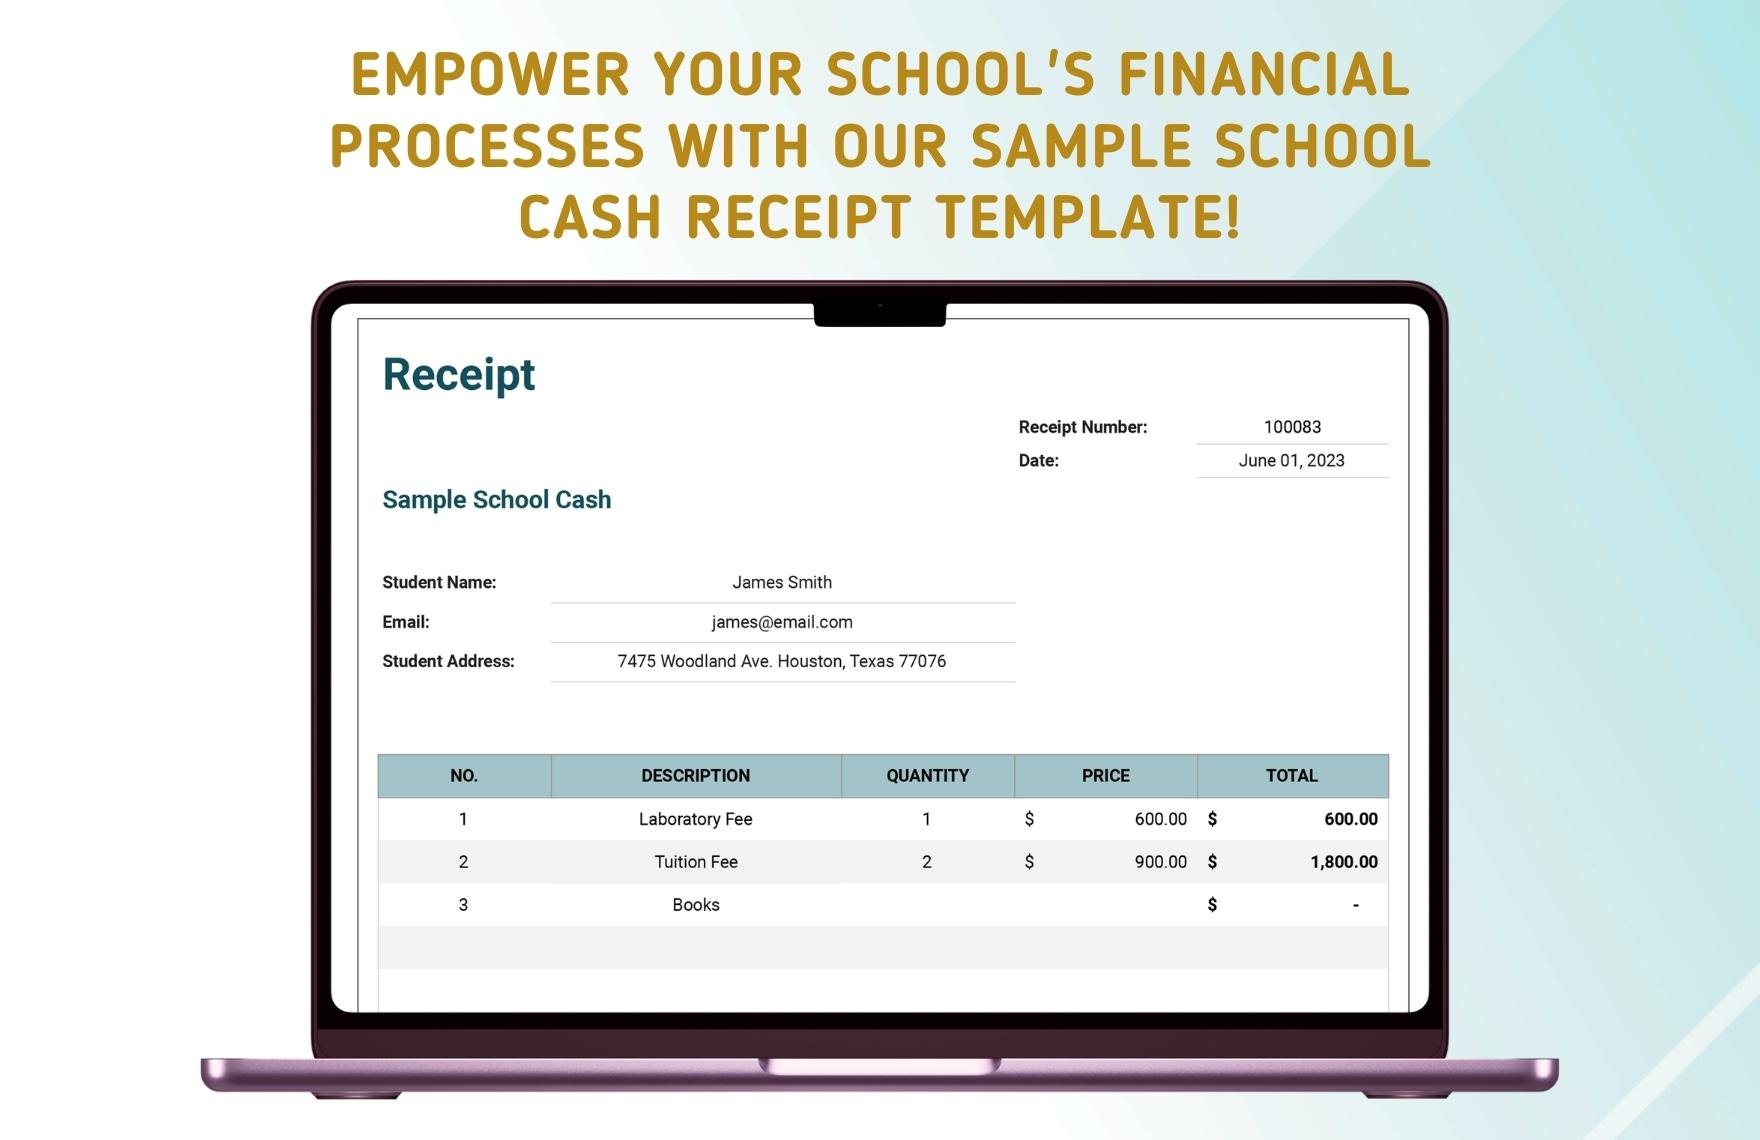 Sample School Cash Receipt Template